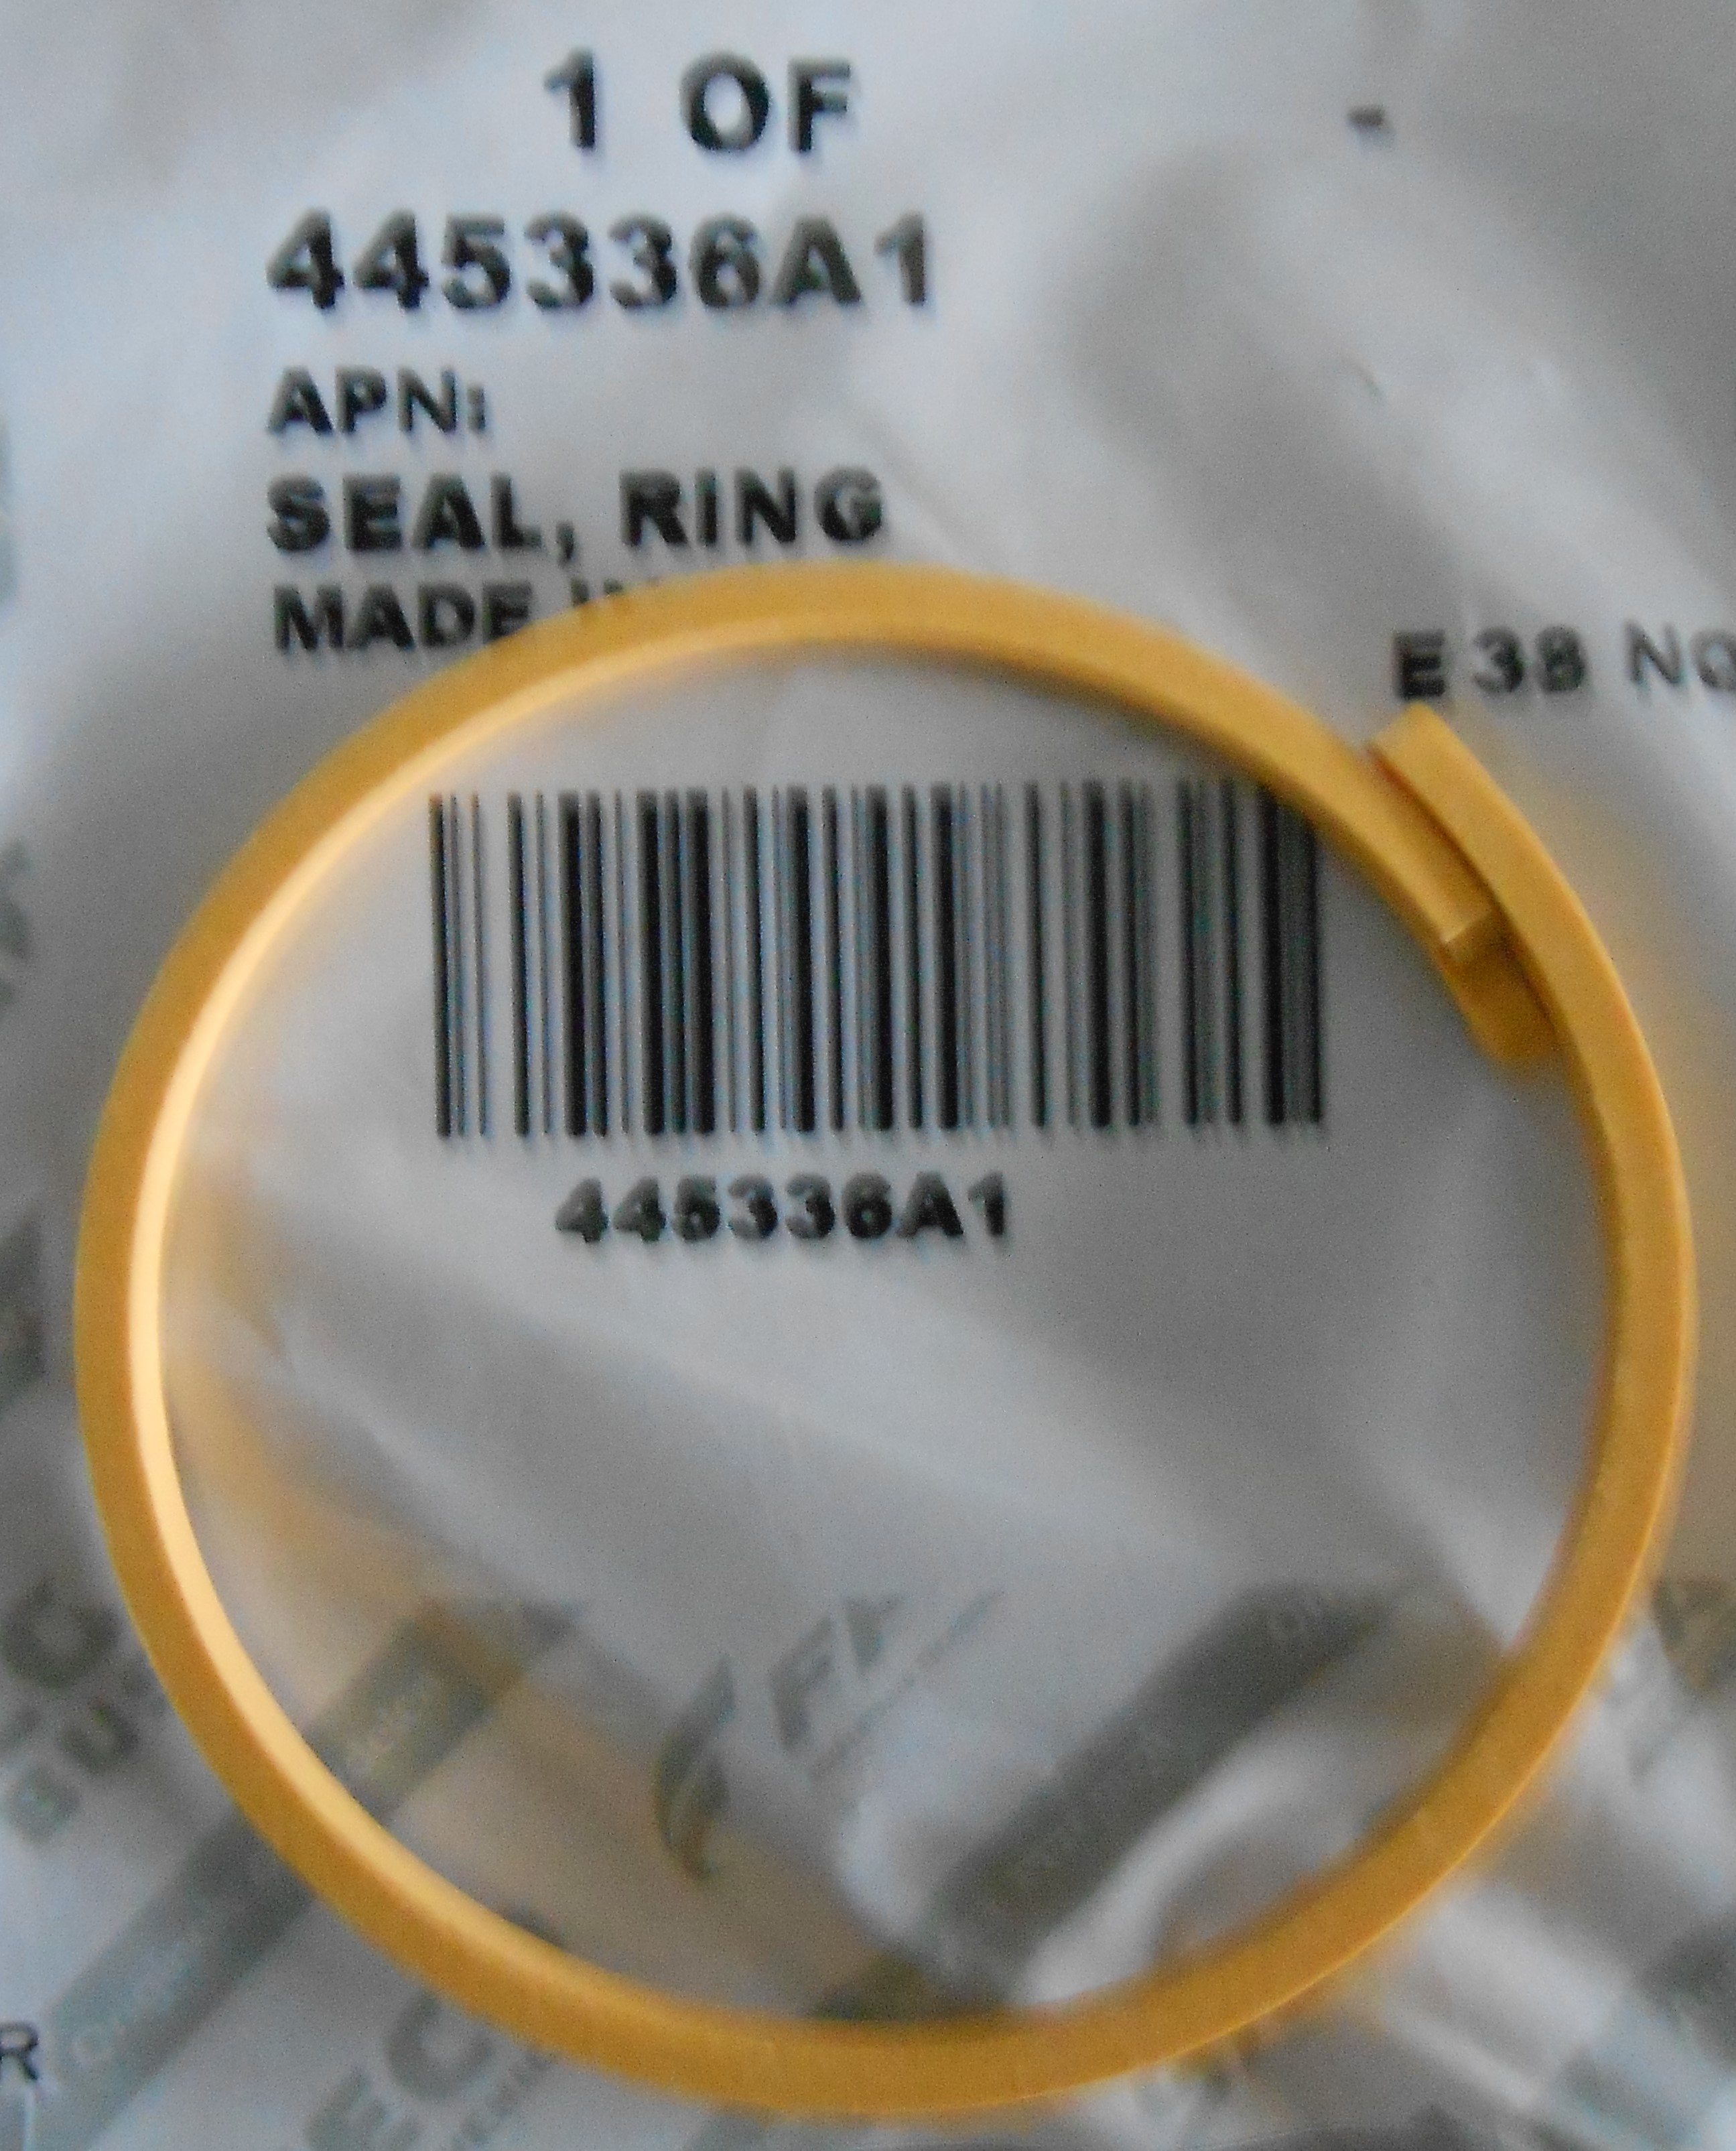 Кольцо КПП Mag340 уплотнительное 445336A1